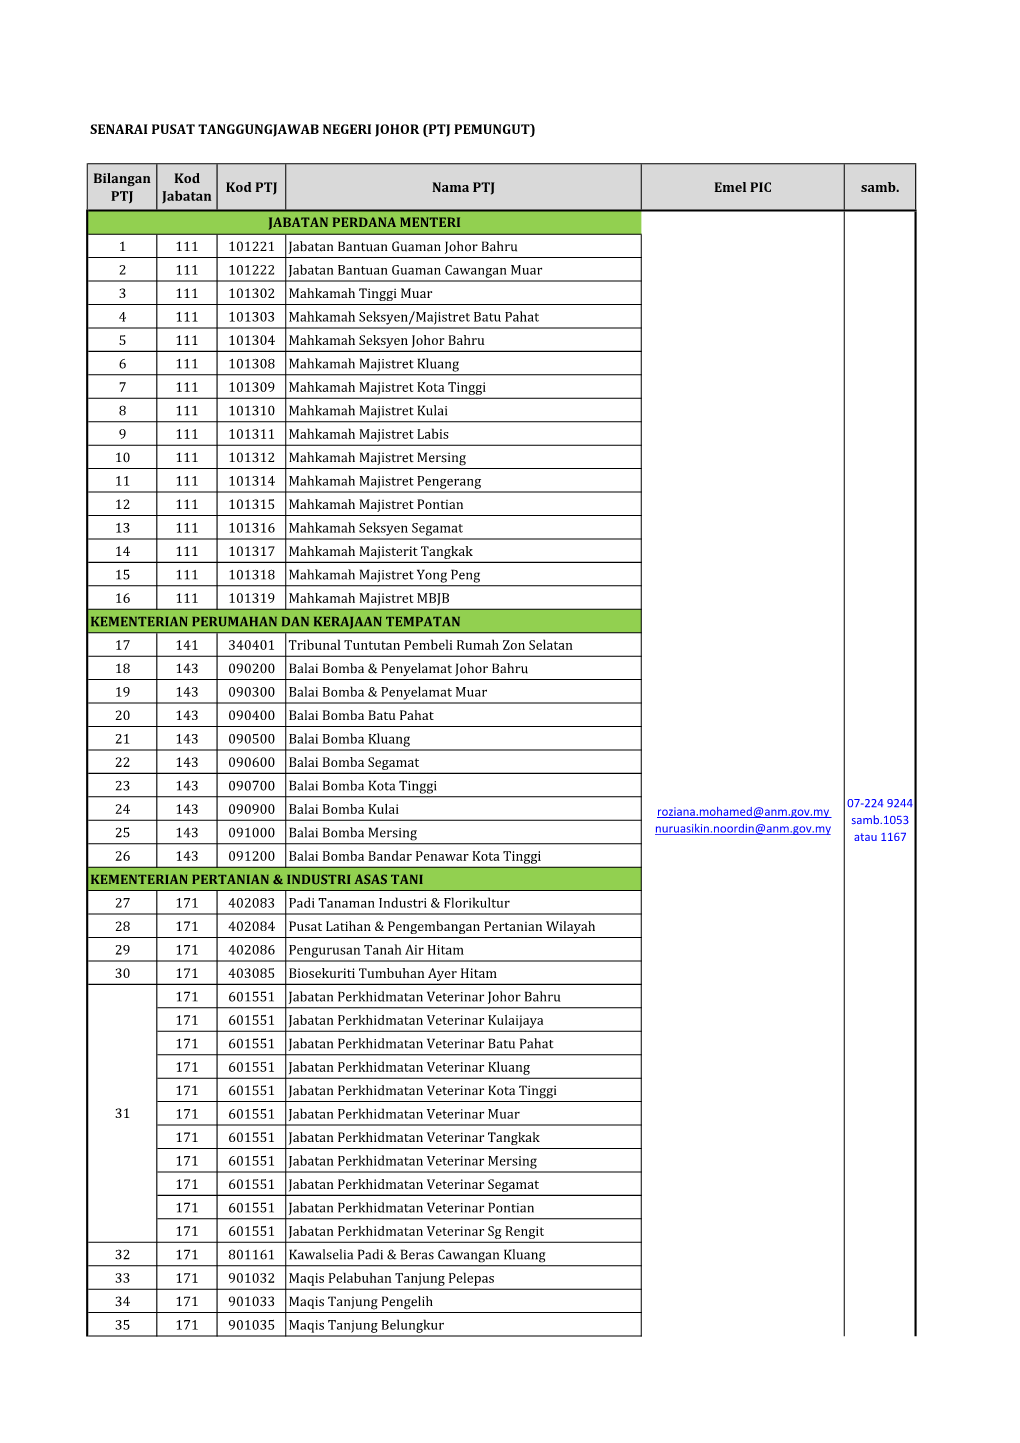 Senarai Pusat Tanggungjawab Negeri Johor (Ptj Pemungut)